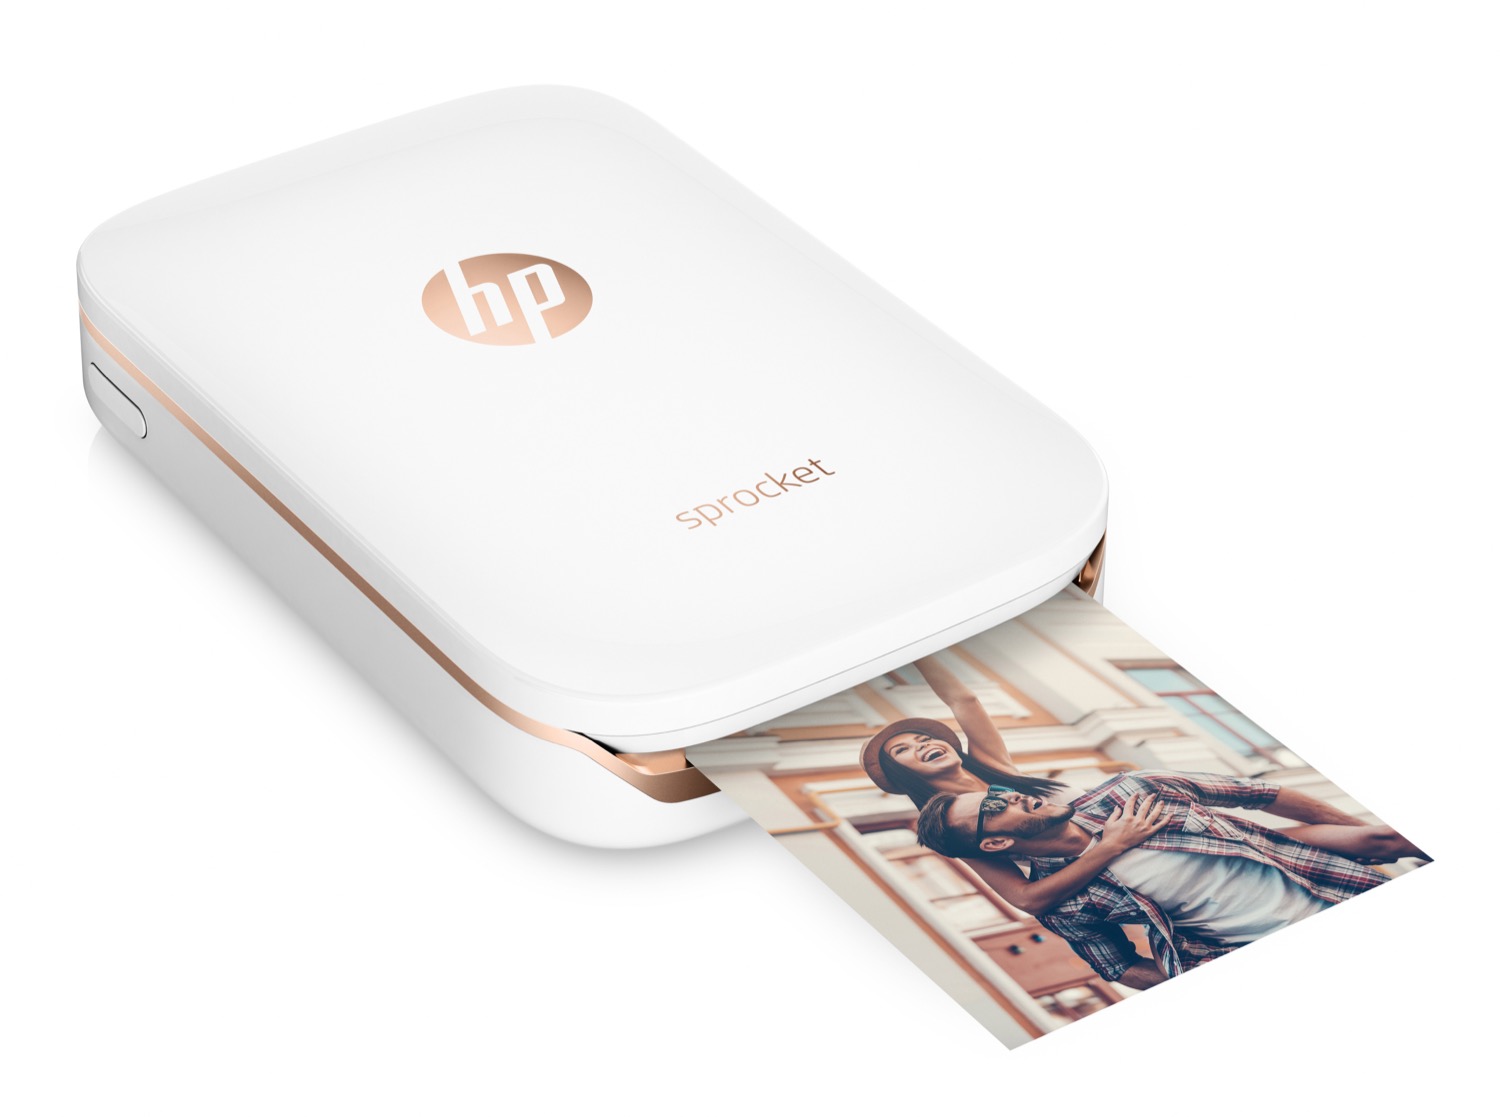 Recensione HP Sprocket, in prova la stampa tasca per tutti 